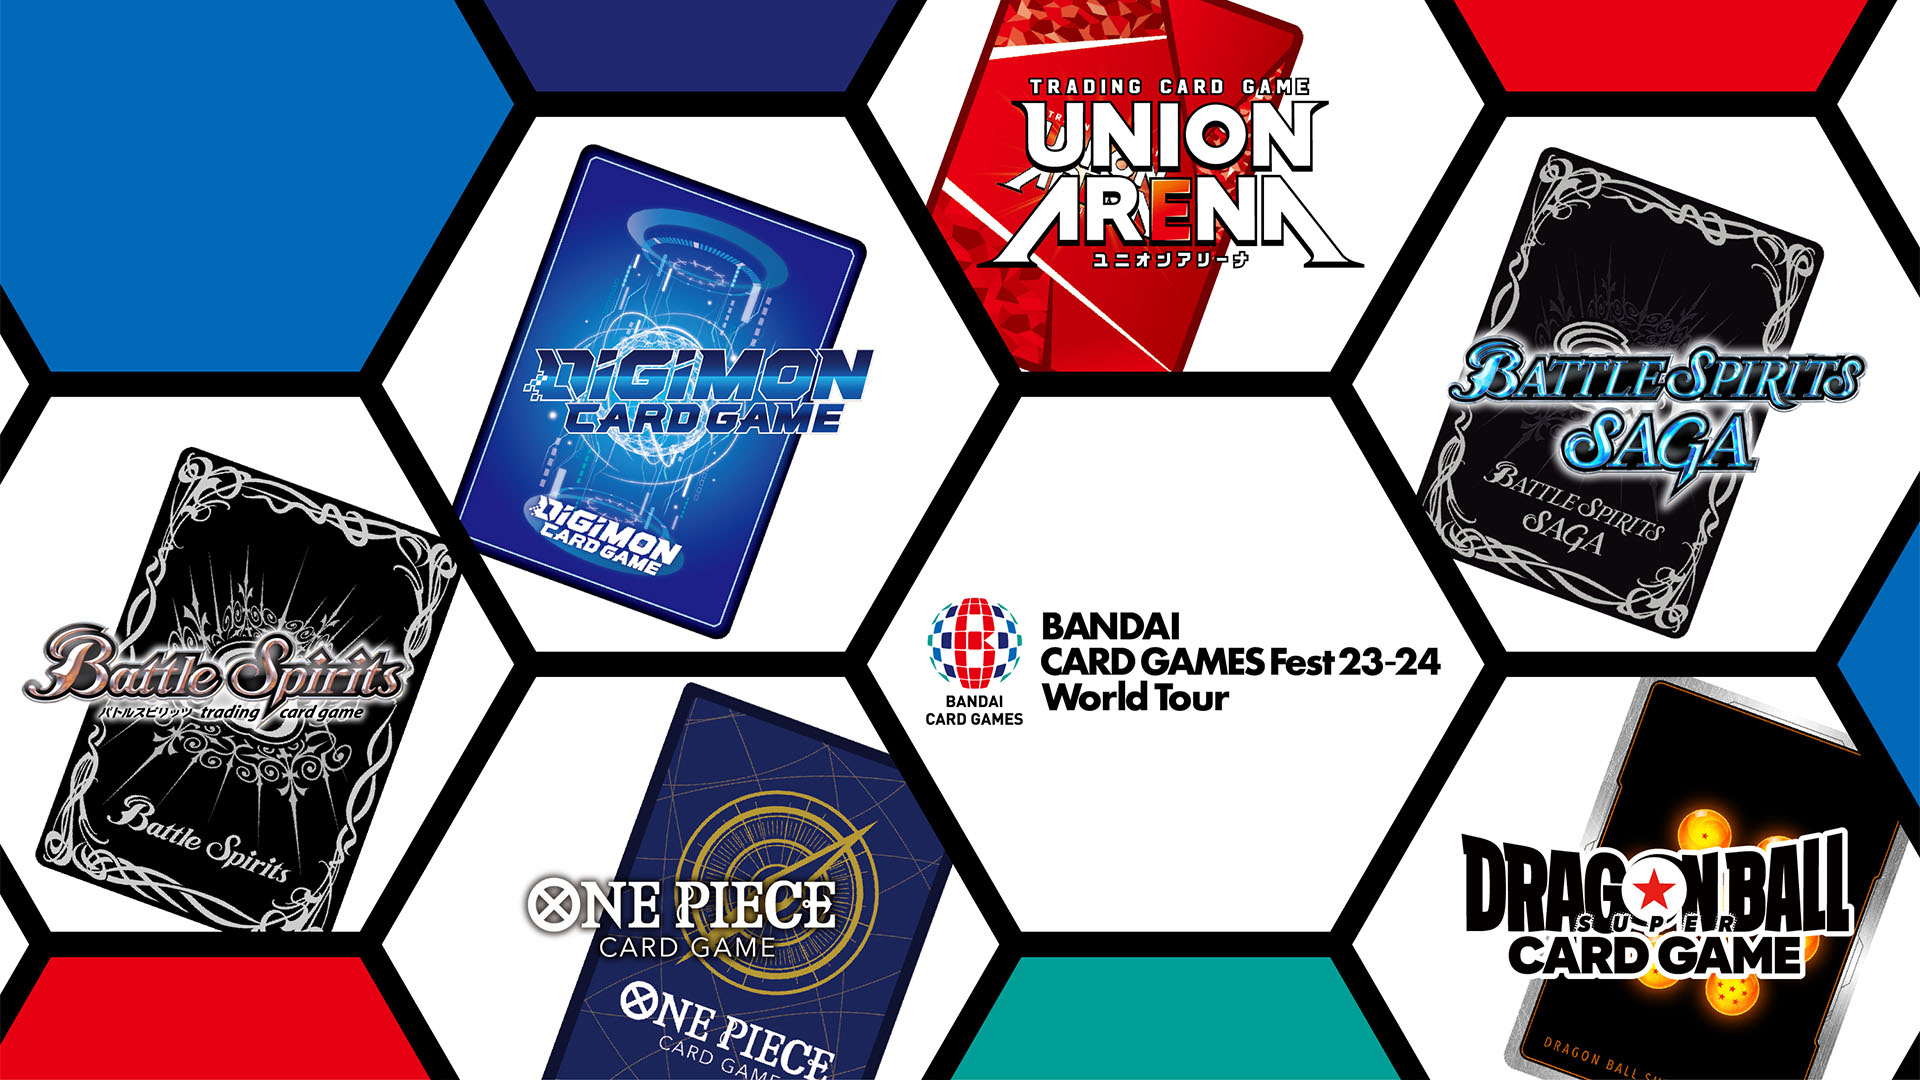 BANDAI CARD GAMES FEST23－24 World Tour